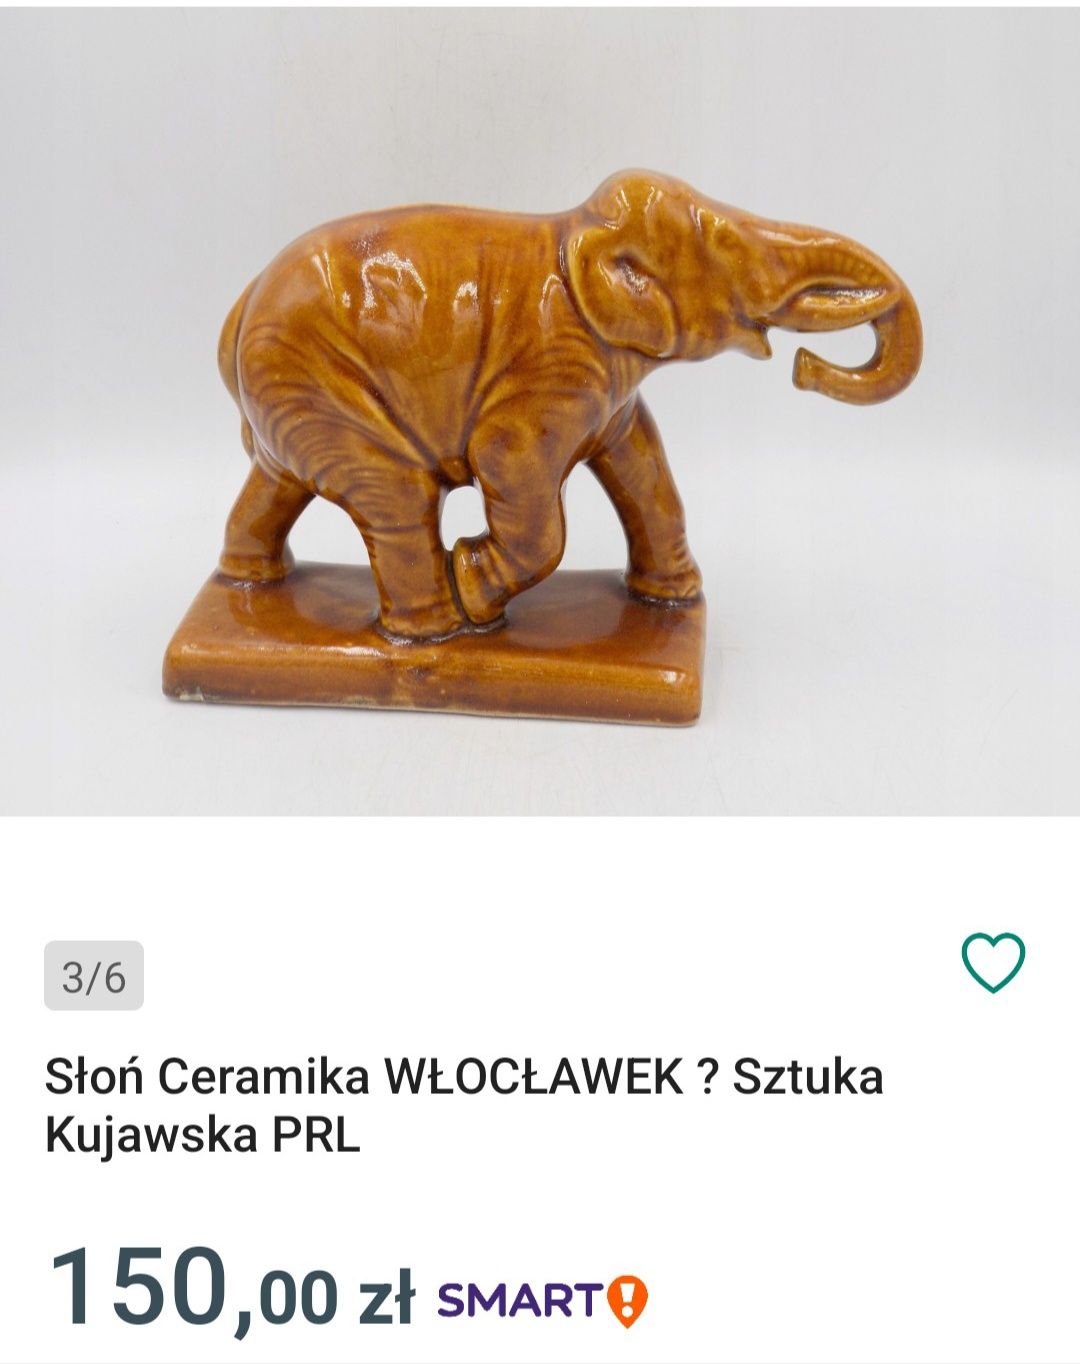 Słoń ceramiczny Włocławek. Sztuka kujawska z PRL-u. Figurka